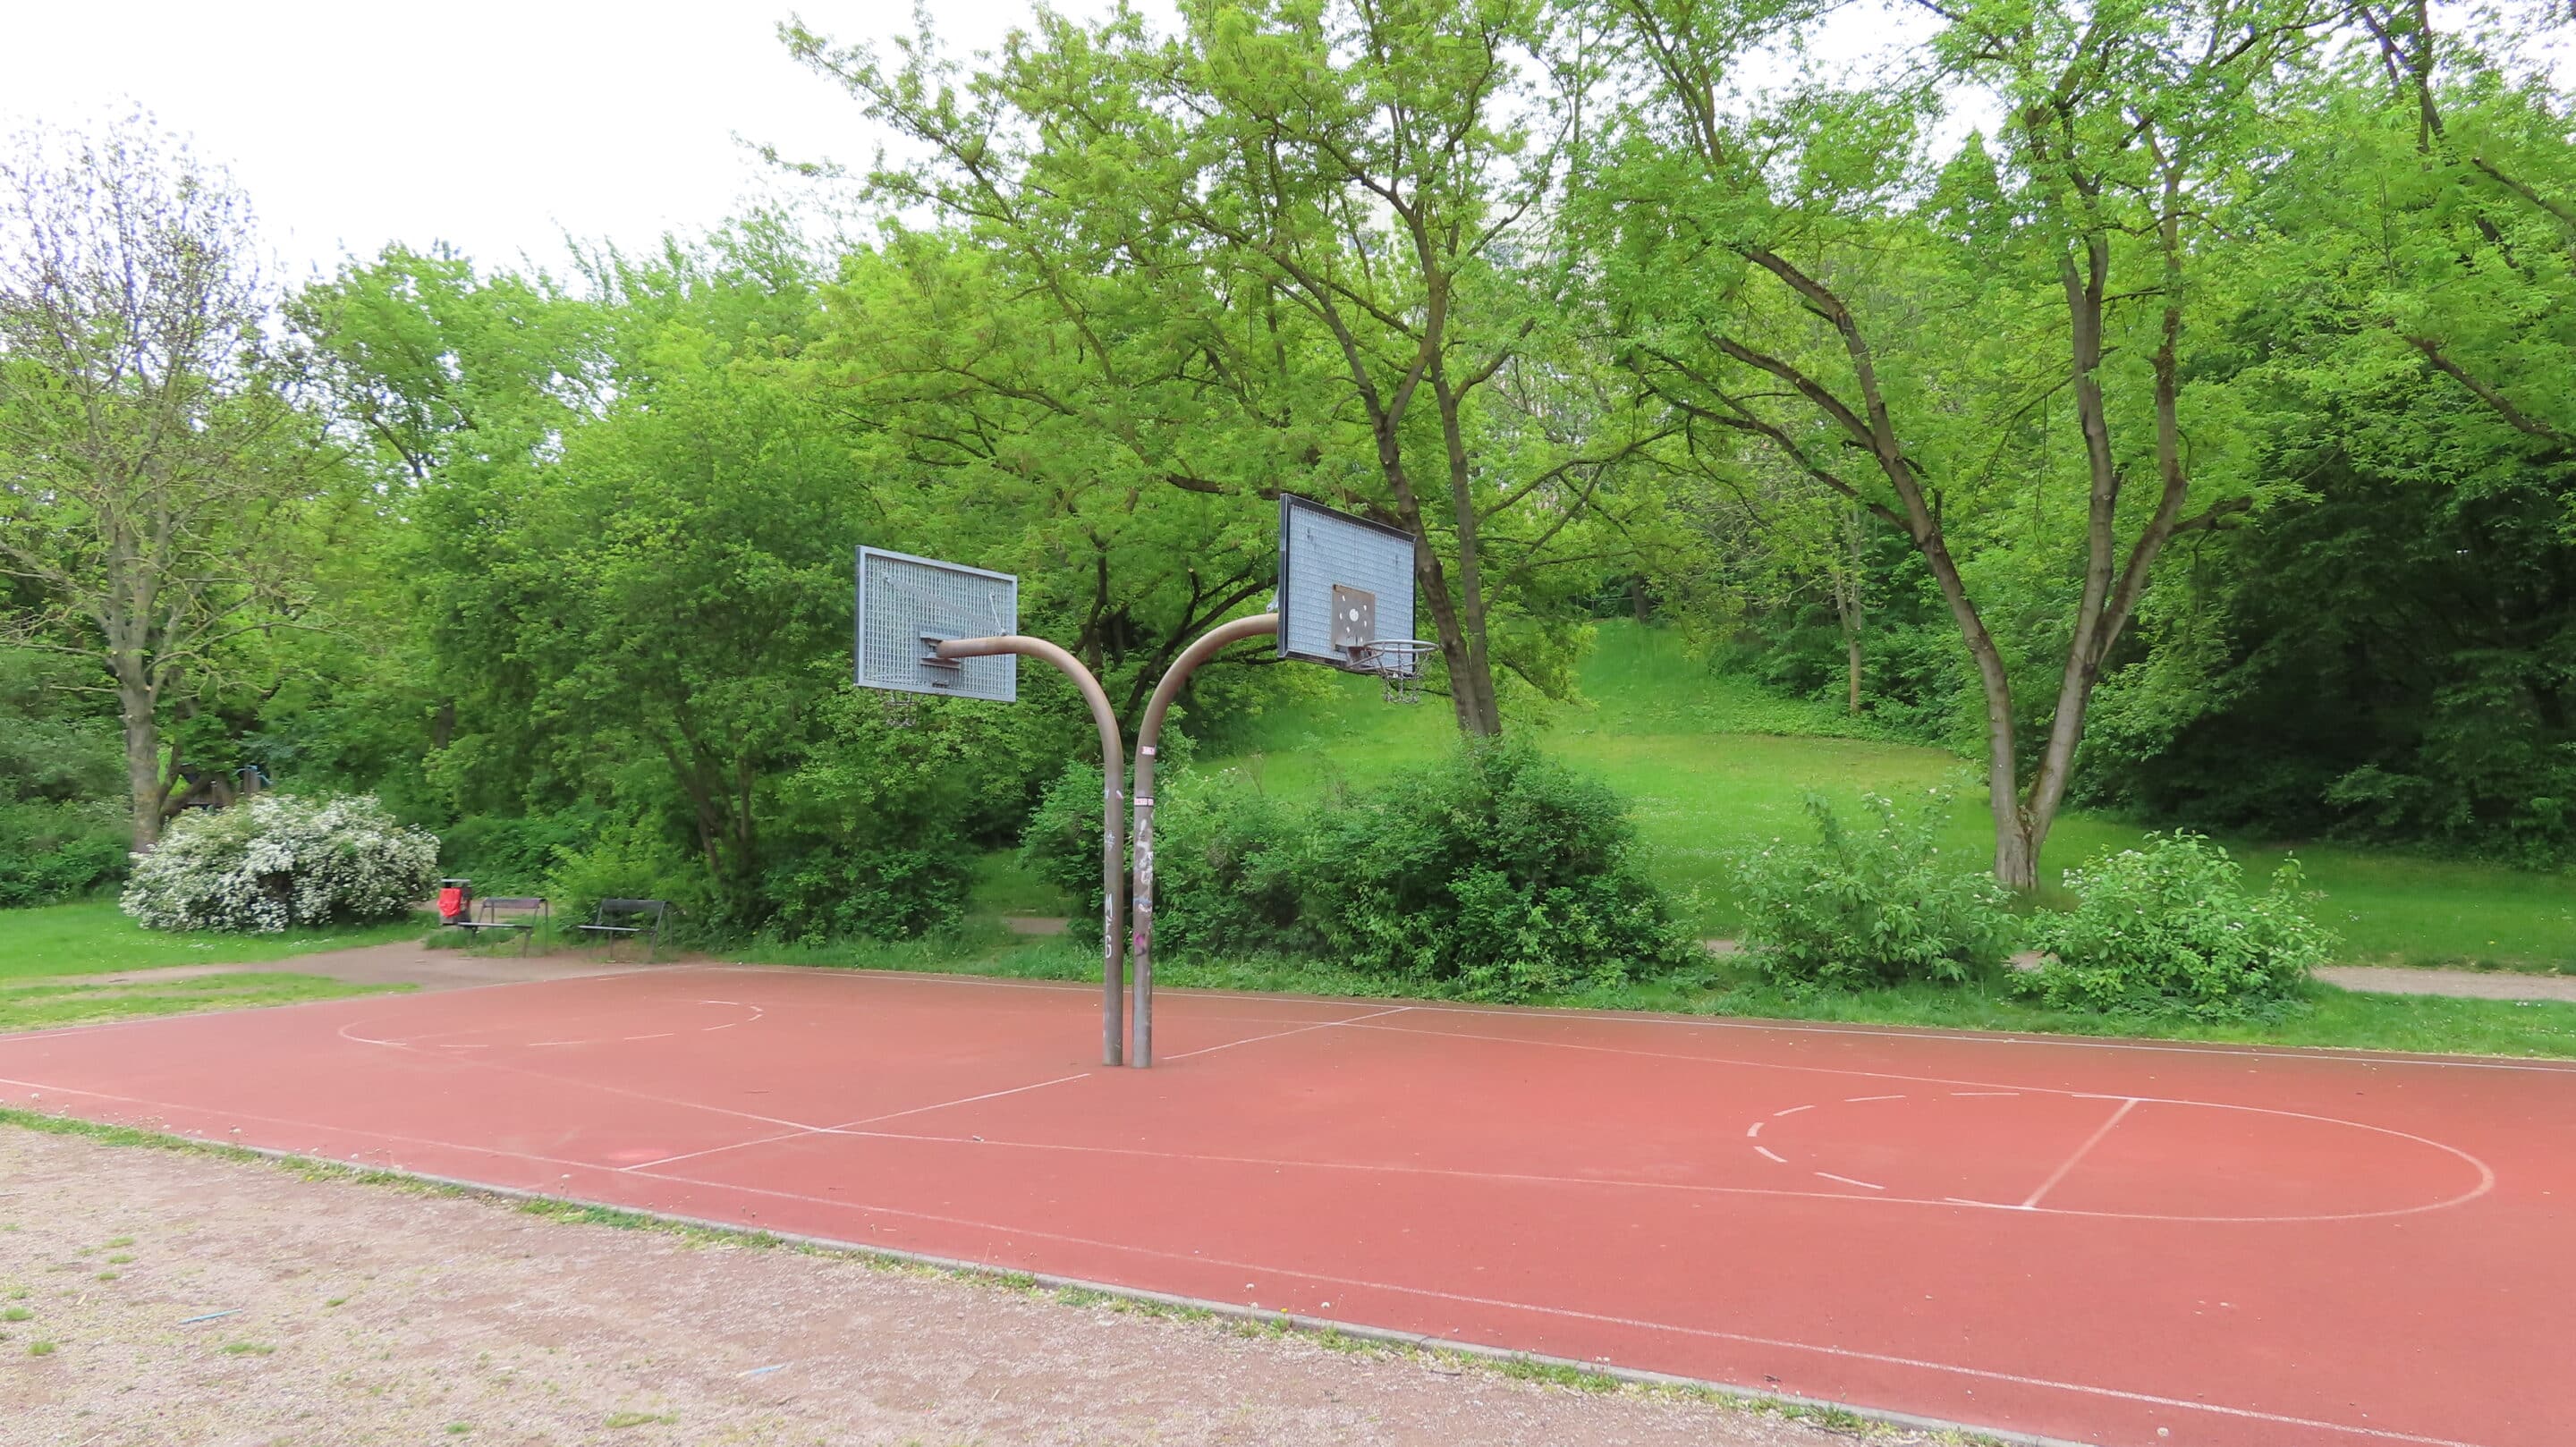 Der Basketballplatz mit zwei gegenüberliegenden Feldern im Kleinen Park Am Wiesenhügel in Erfurt.